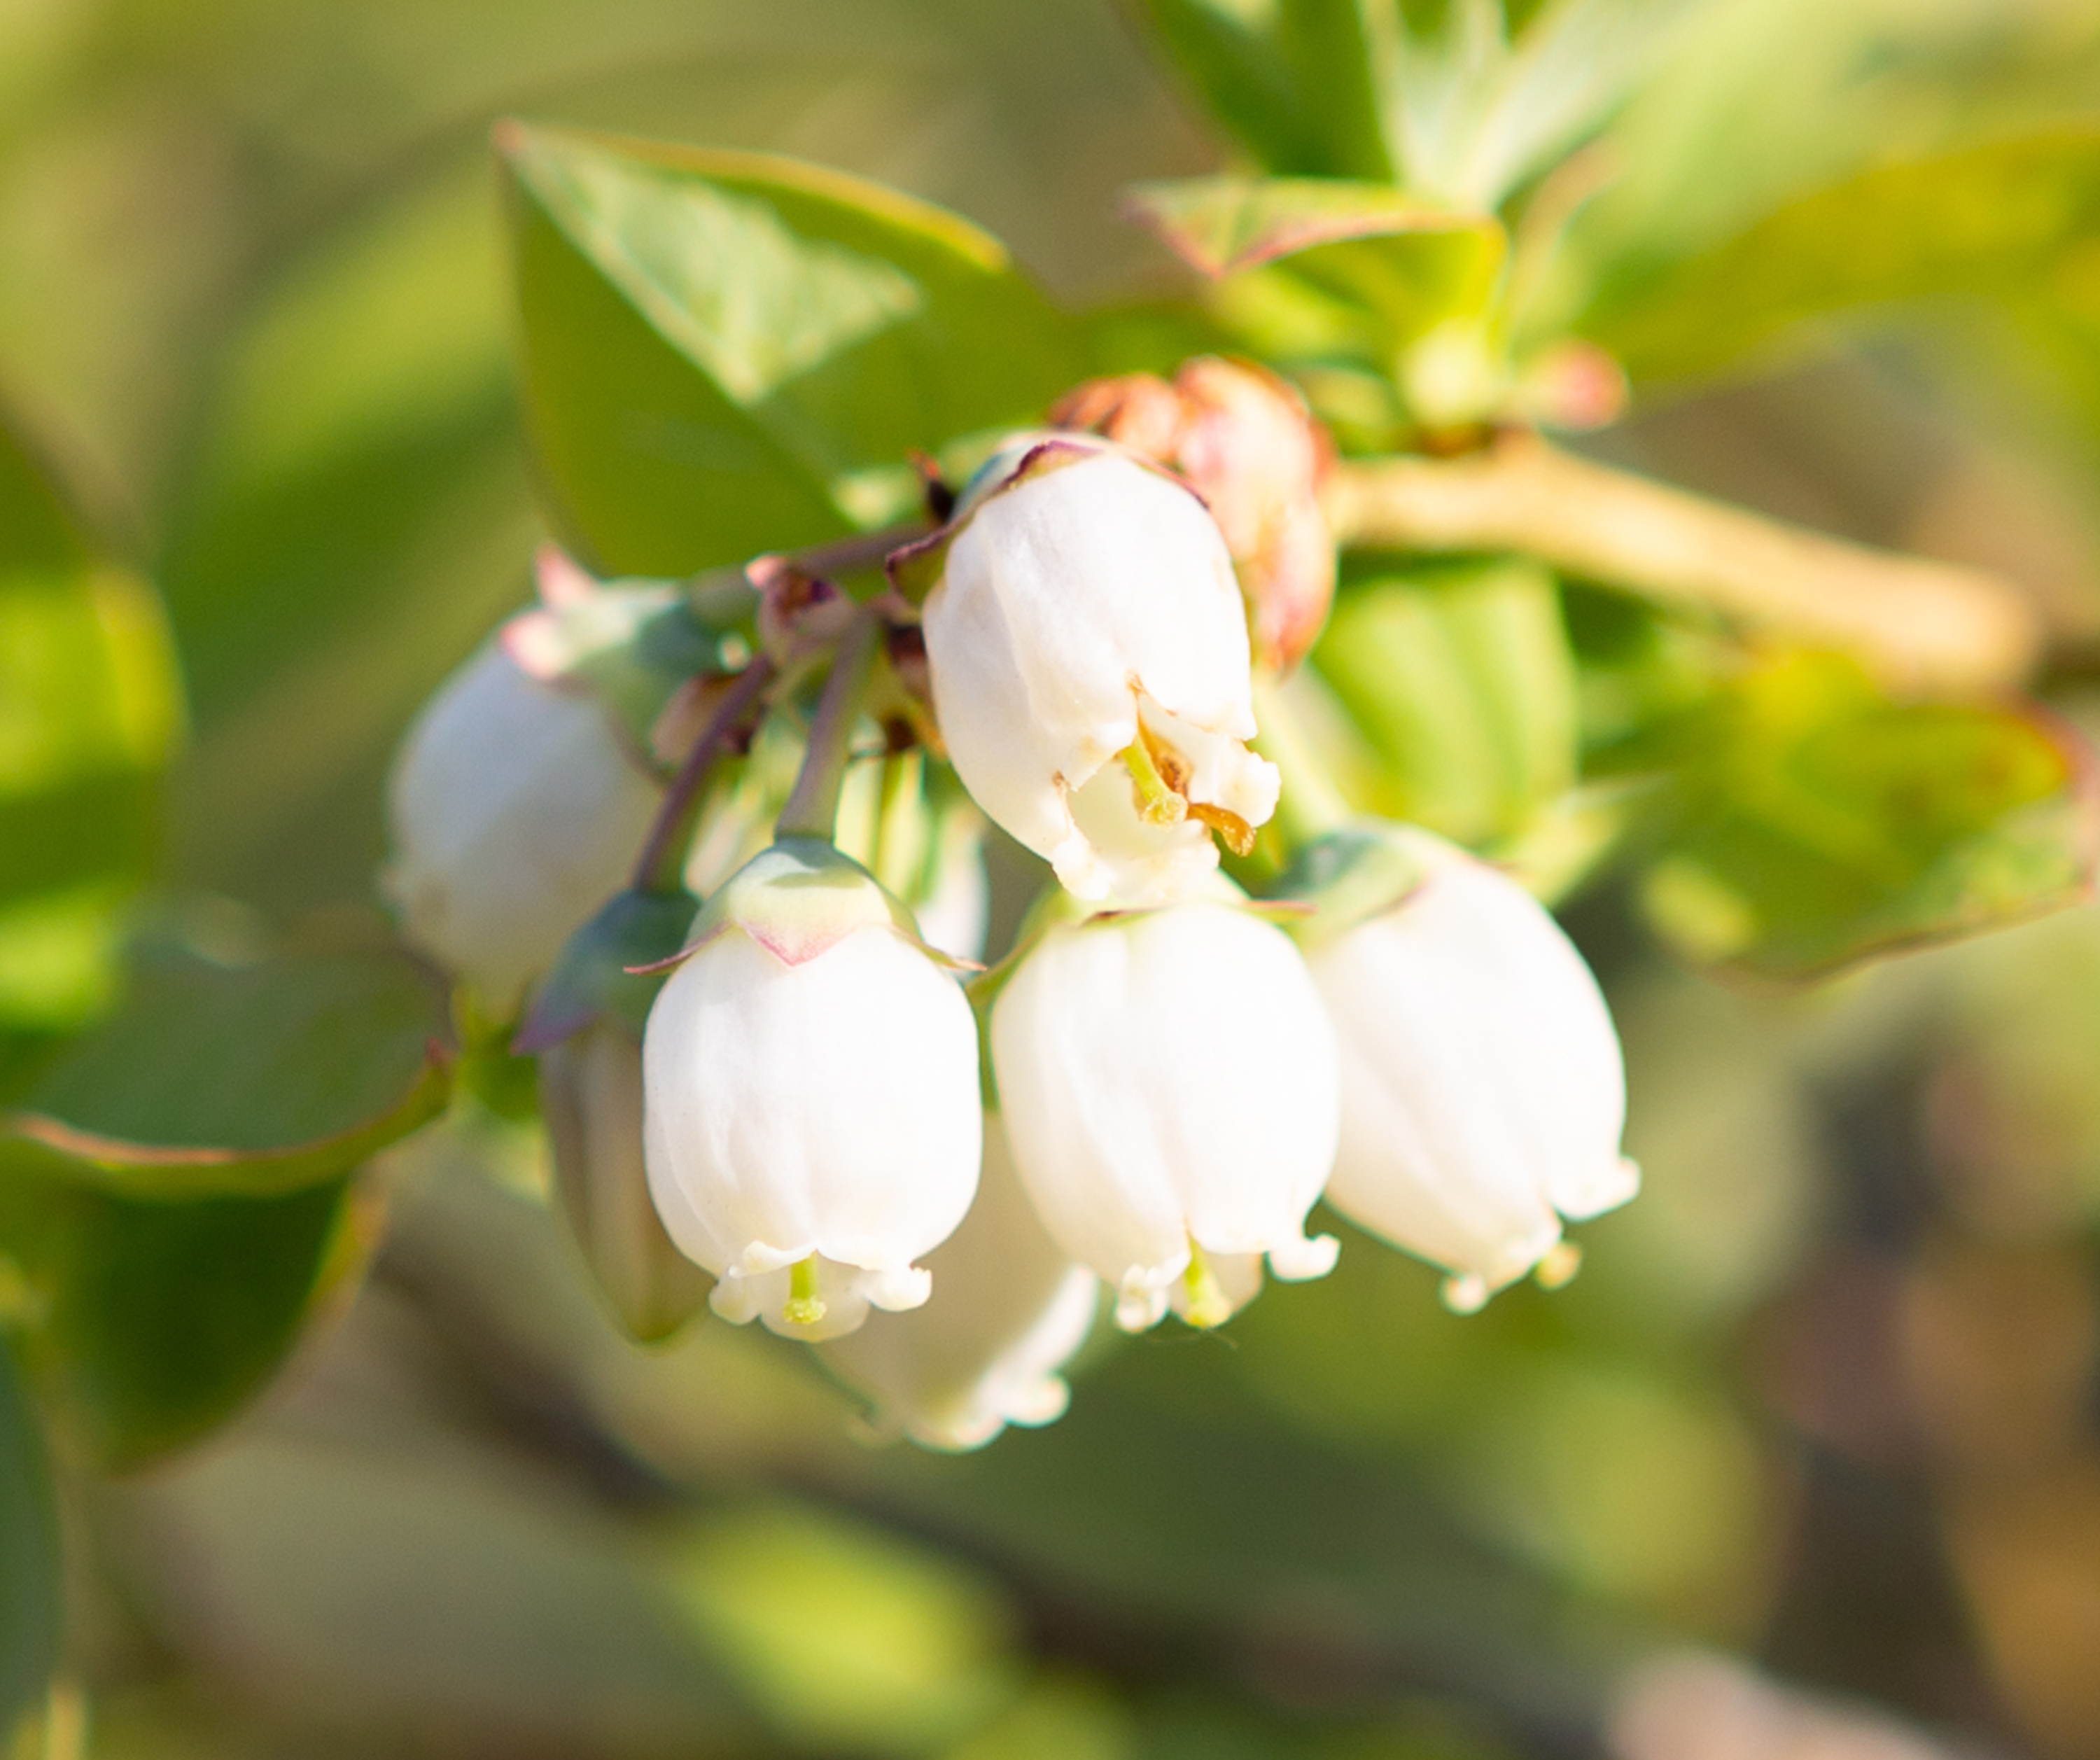 ブルーベリーの花 無料の高画質フリー写真素材 イメージズラボ